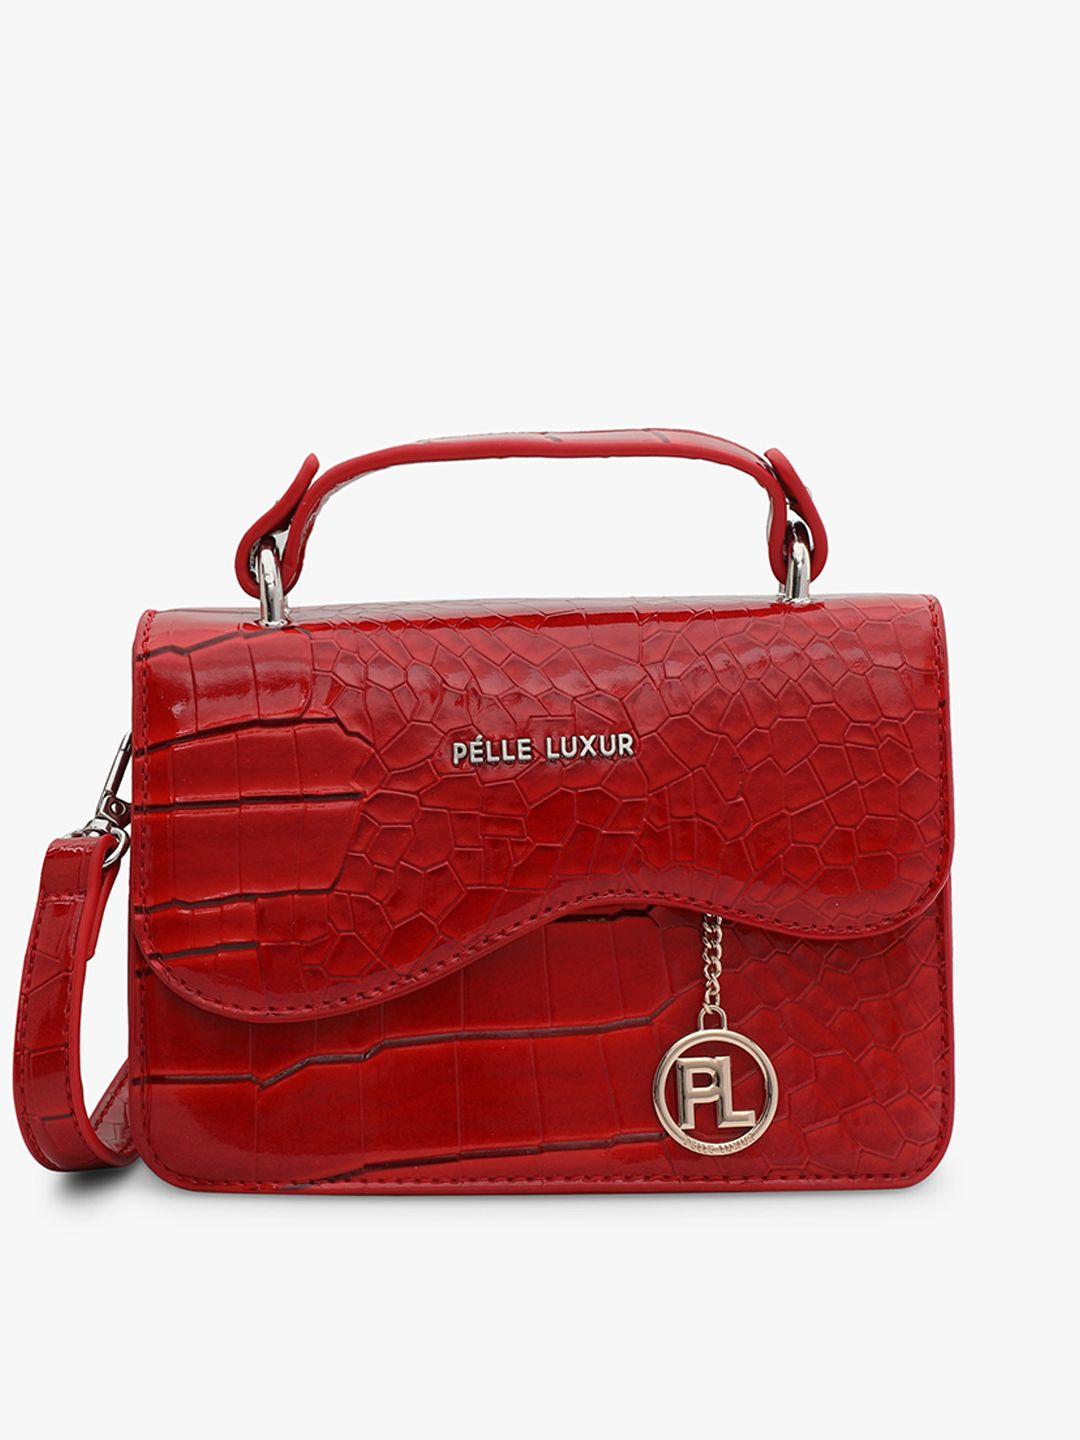 pelle luxur red textured pu structured satchel